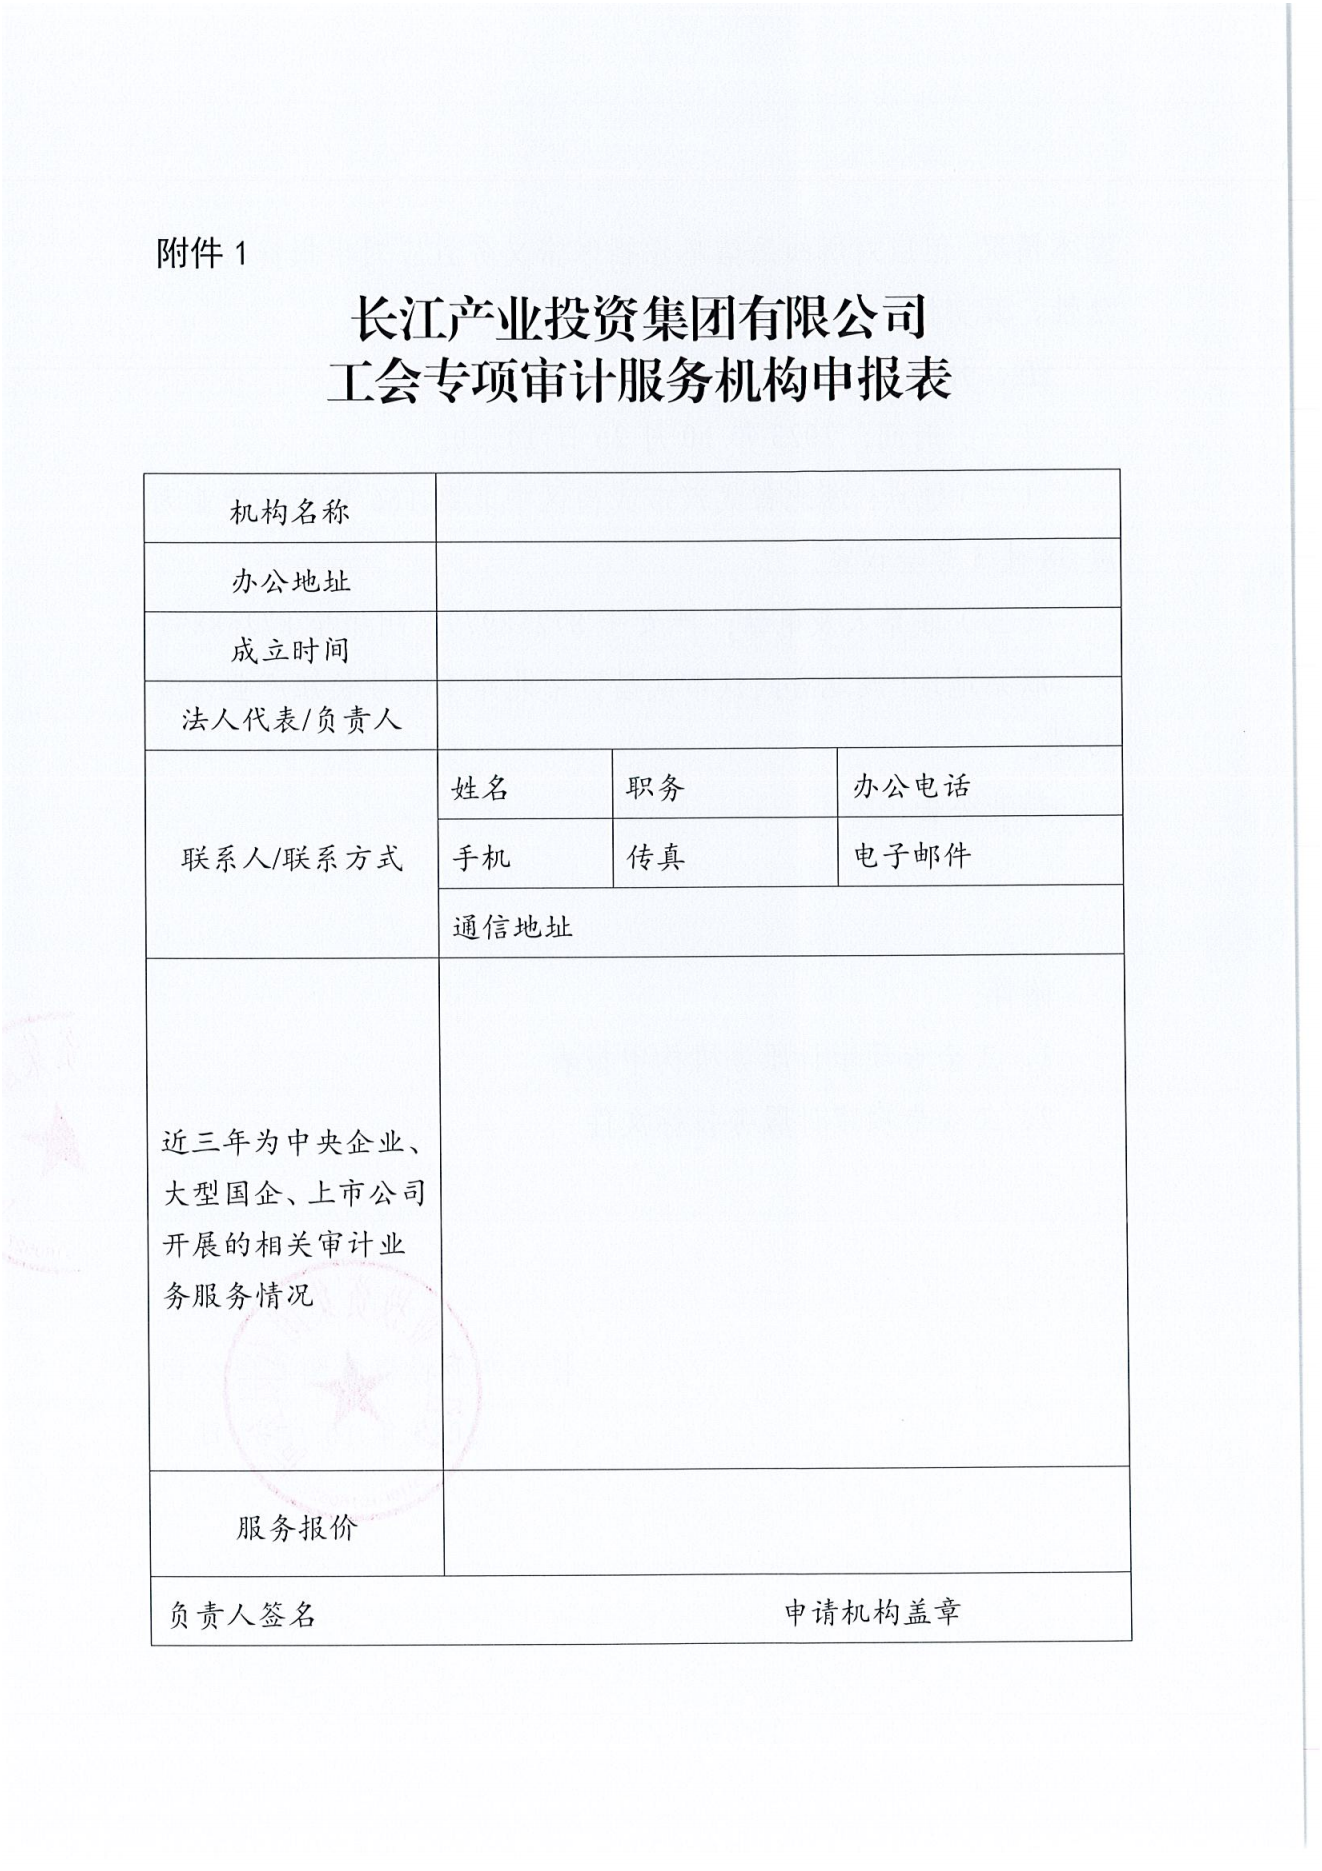 买球体育官方网站(中国)工会专项审计项目竞争性磋商公告_03.png